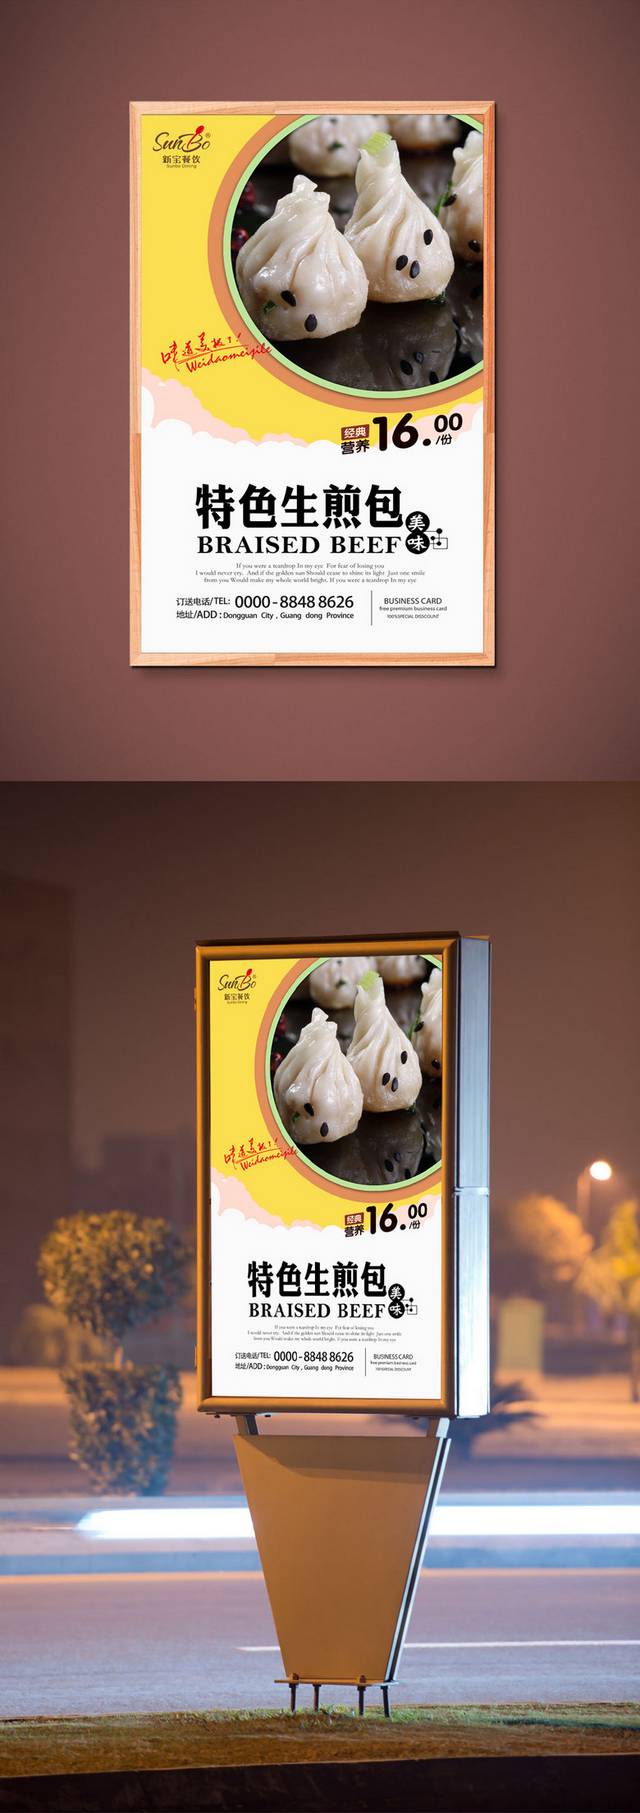 传统小吃生煎包海报设计